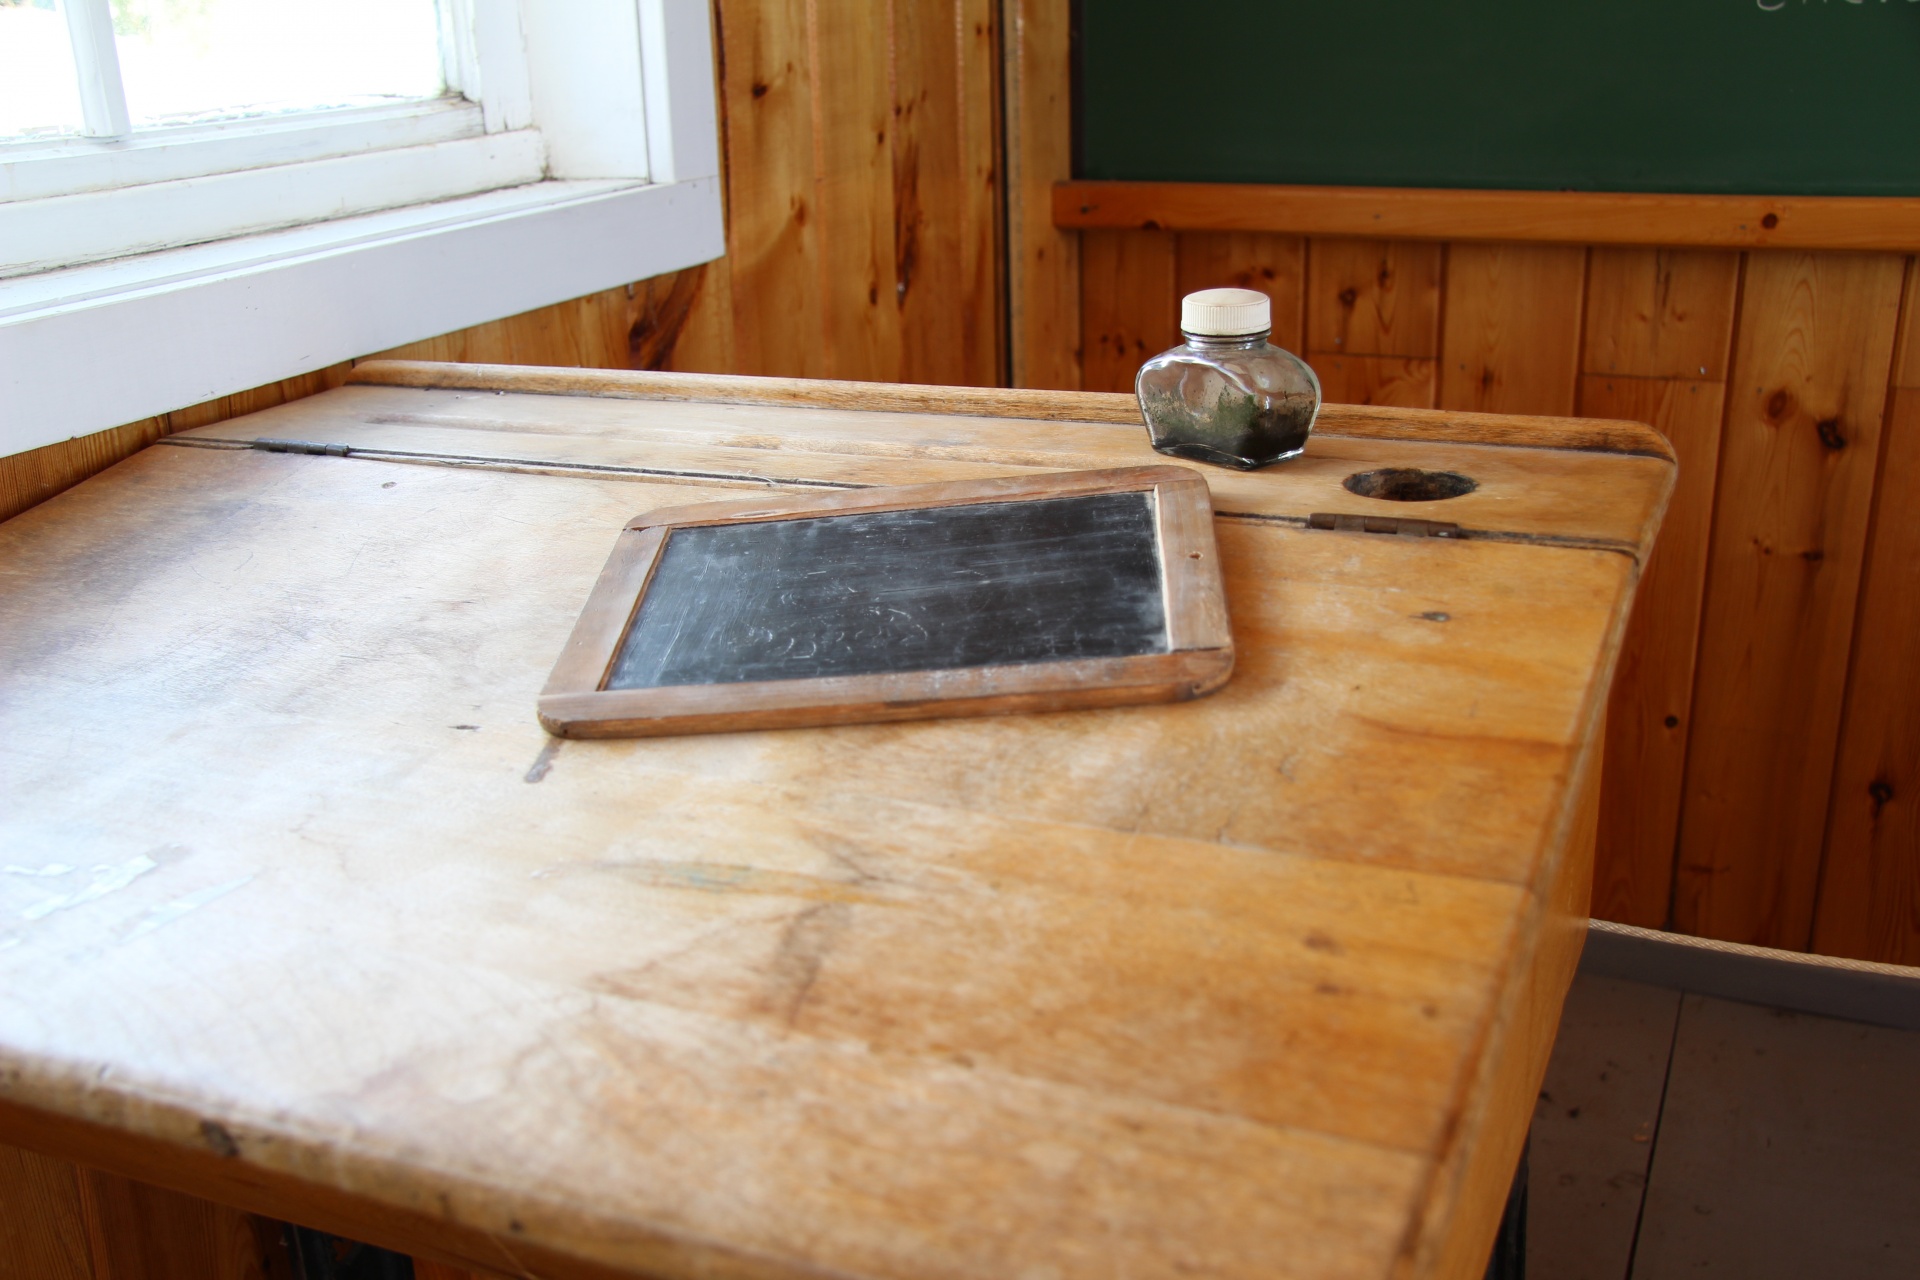 Schule Schreibtisch Tafel Inkwell Kostenloses Stock Bild Public